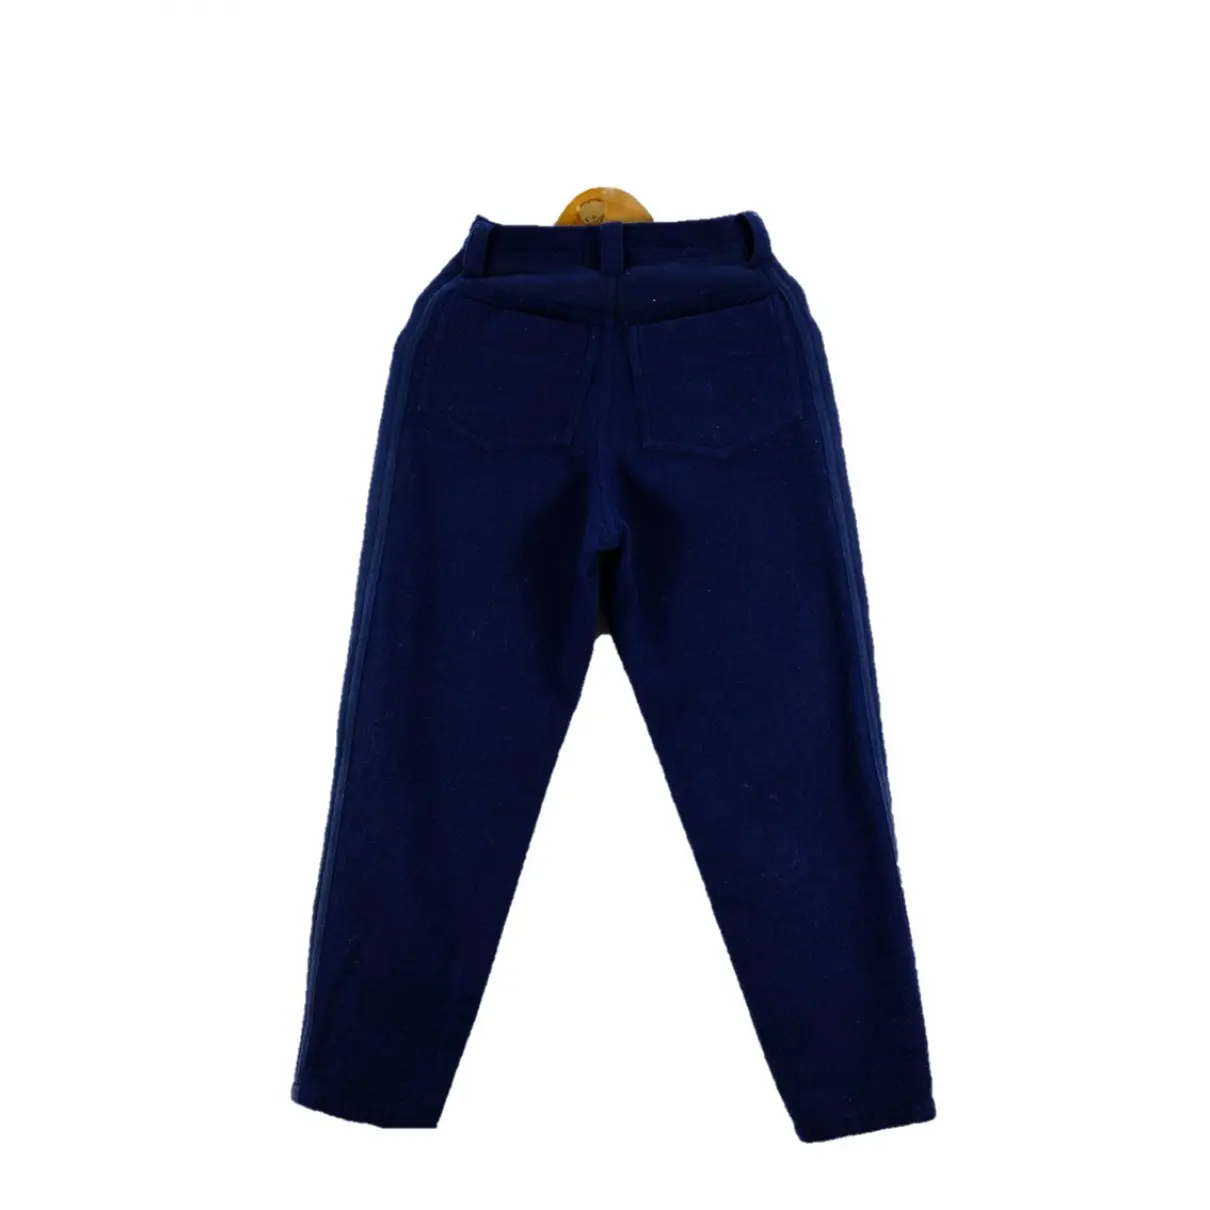 Buy Issey Miyake Wool trousers online